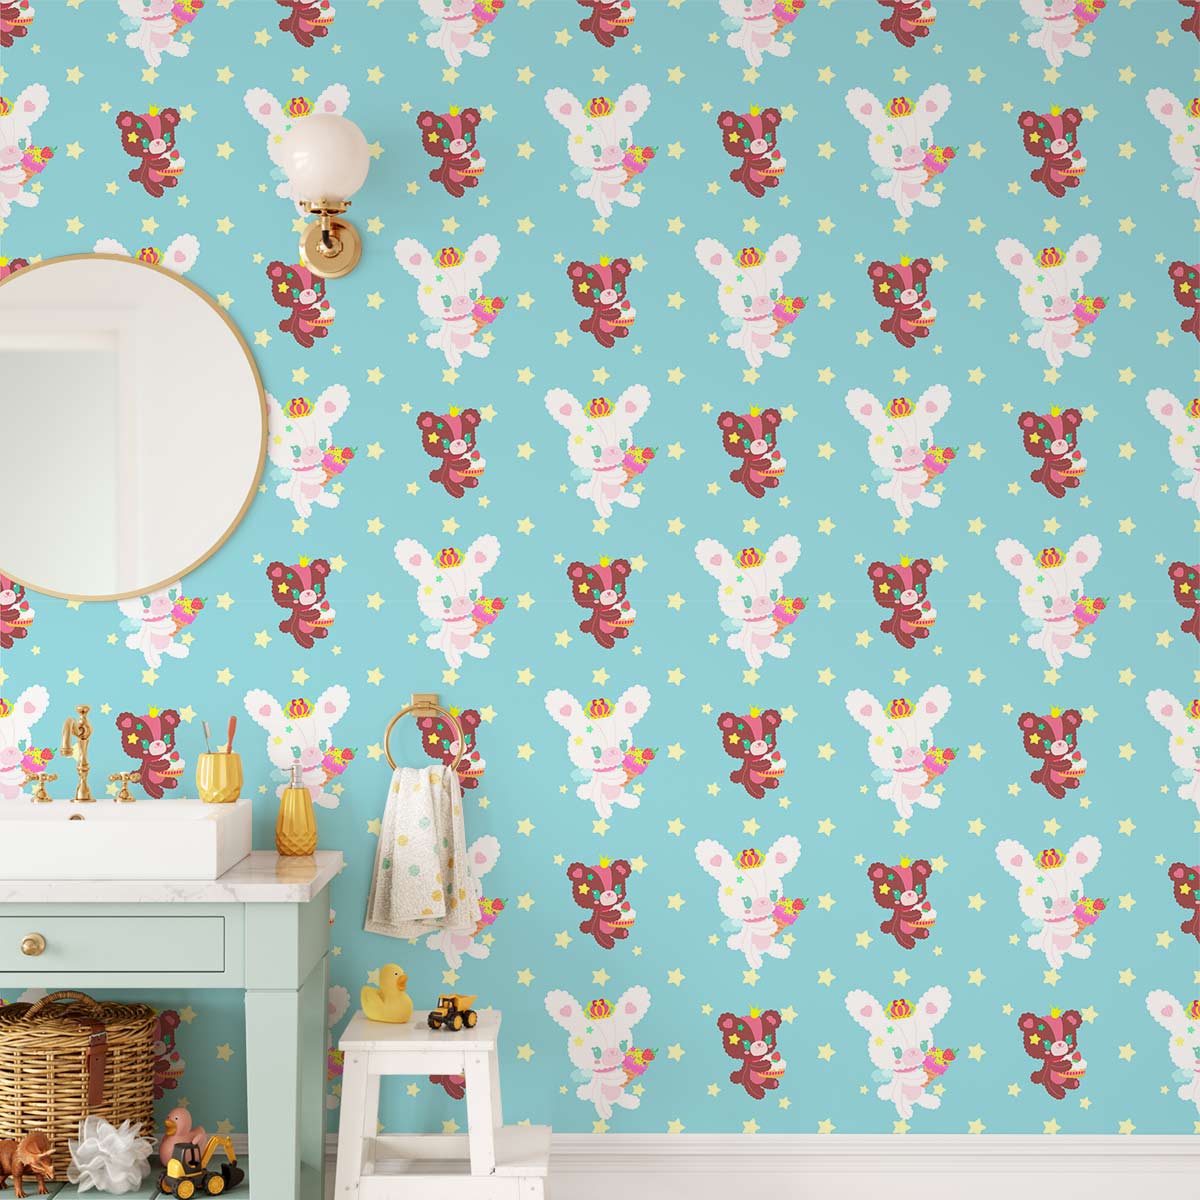 Bunny & Bear Animal Wallpaper Home Interior Decor